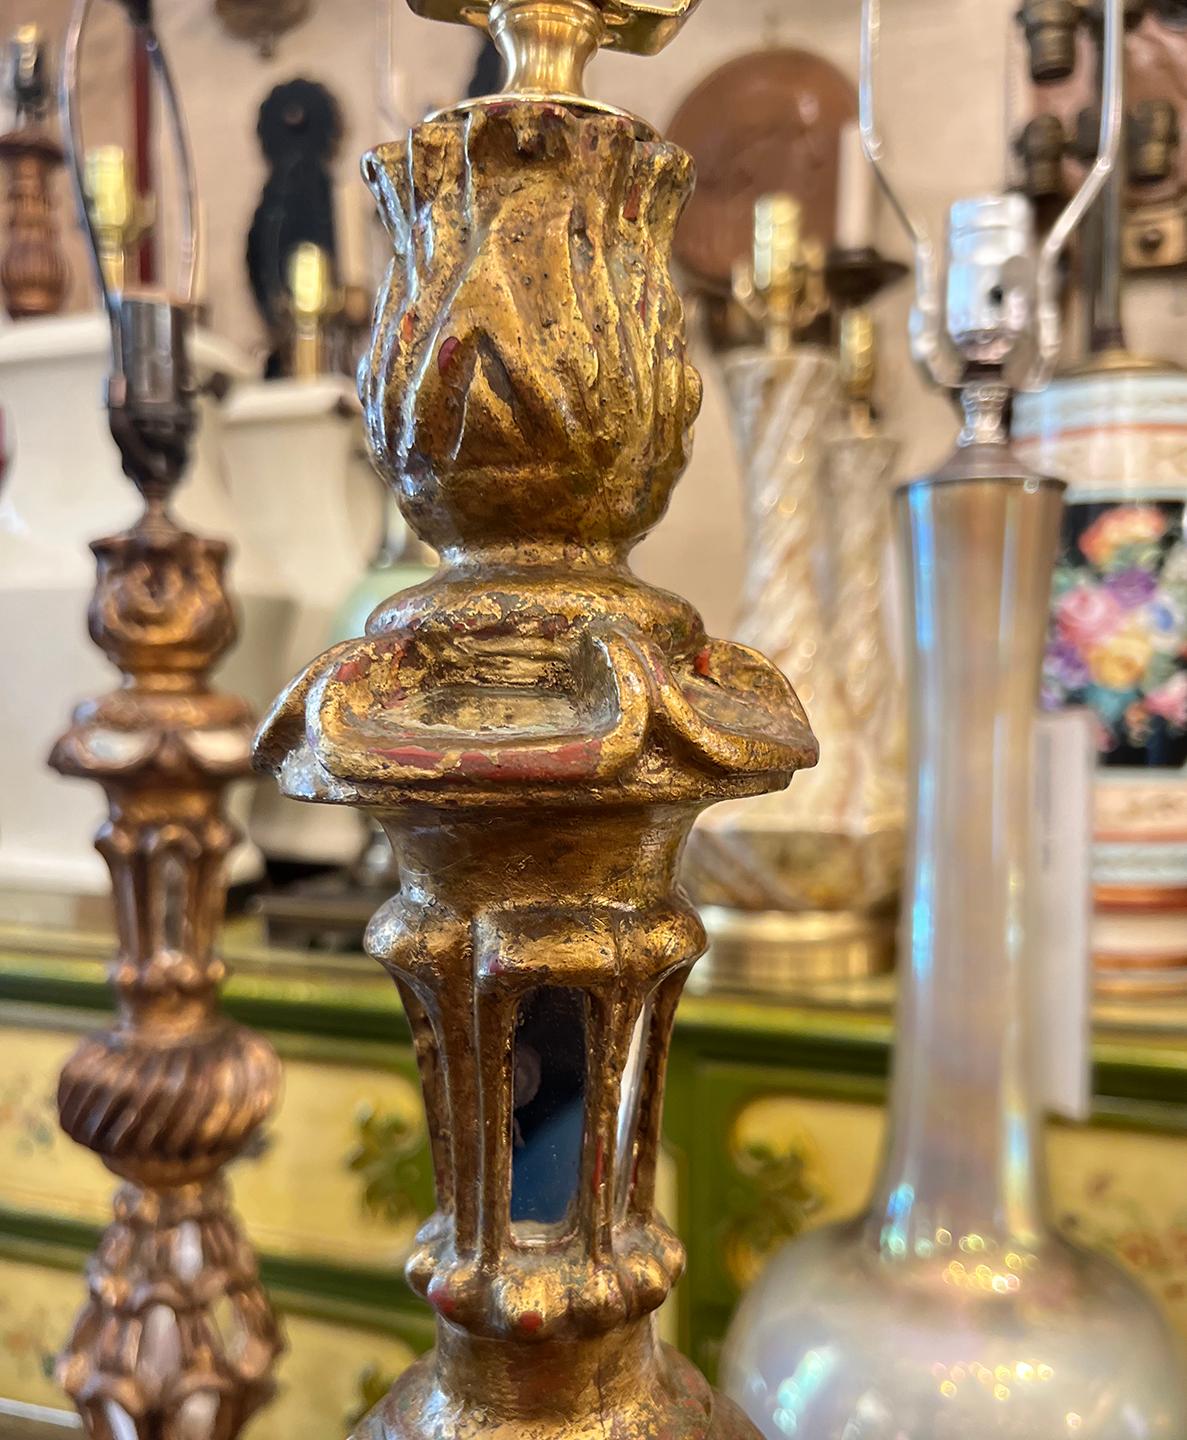 Lampe chandelier espagnole des années 1920 avec inserts en miroir.

Mesures :
Hauteur du corps : 23″.
Hauteur jusqu'au repose-ombre : 33.25″
Diamètre (base) : 8″